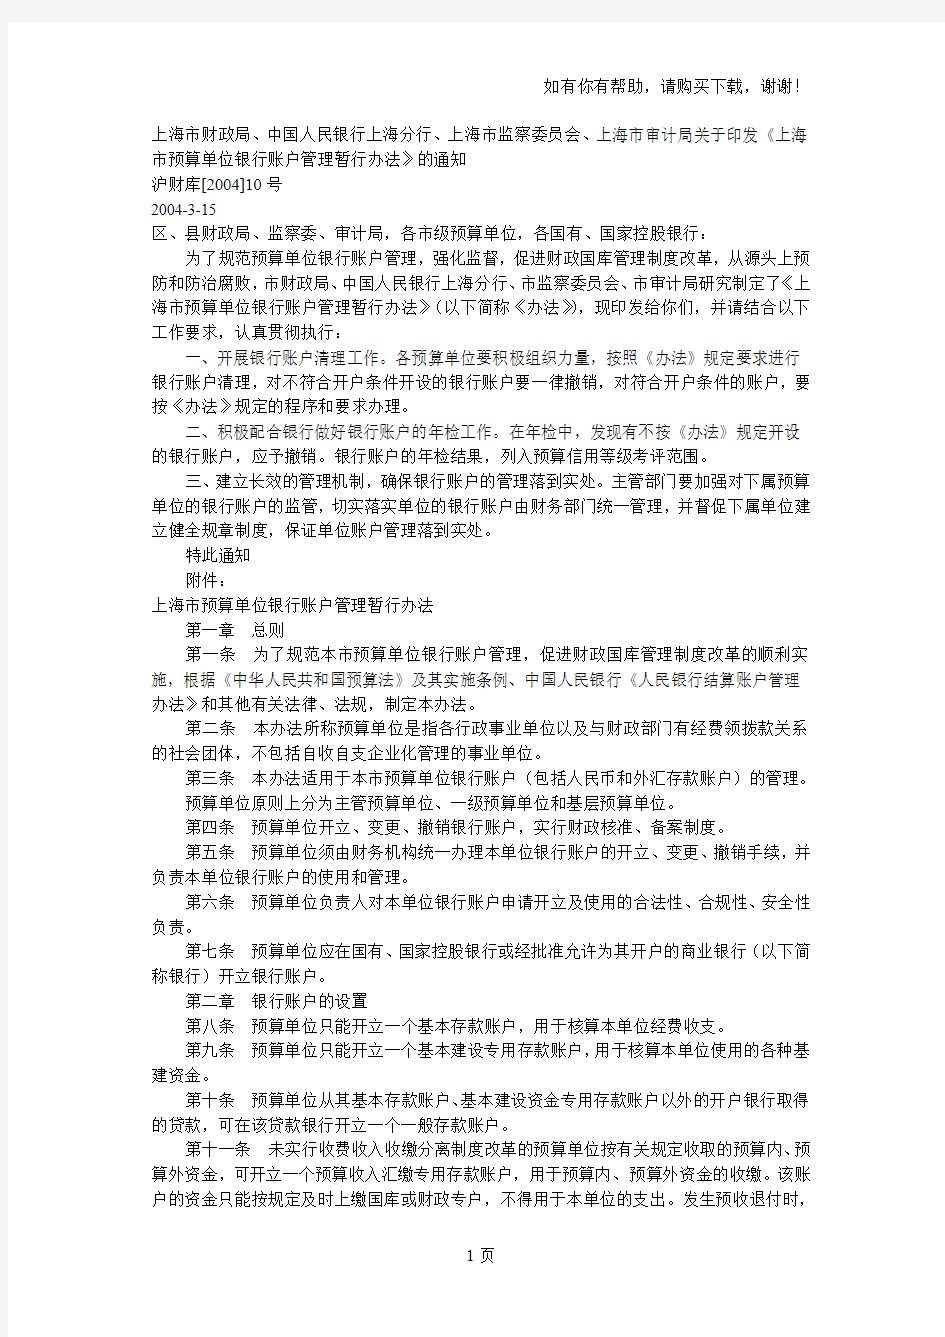 上海市预算单位银行账户管理暂行办法